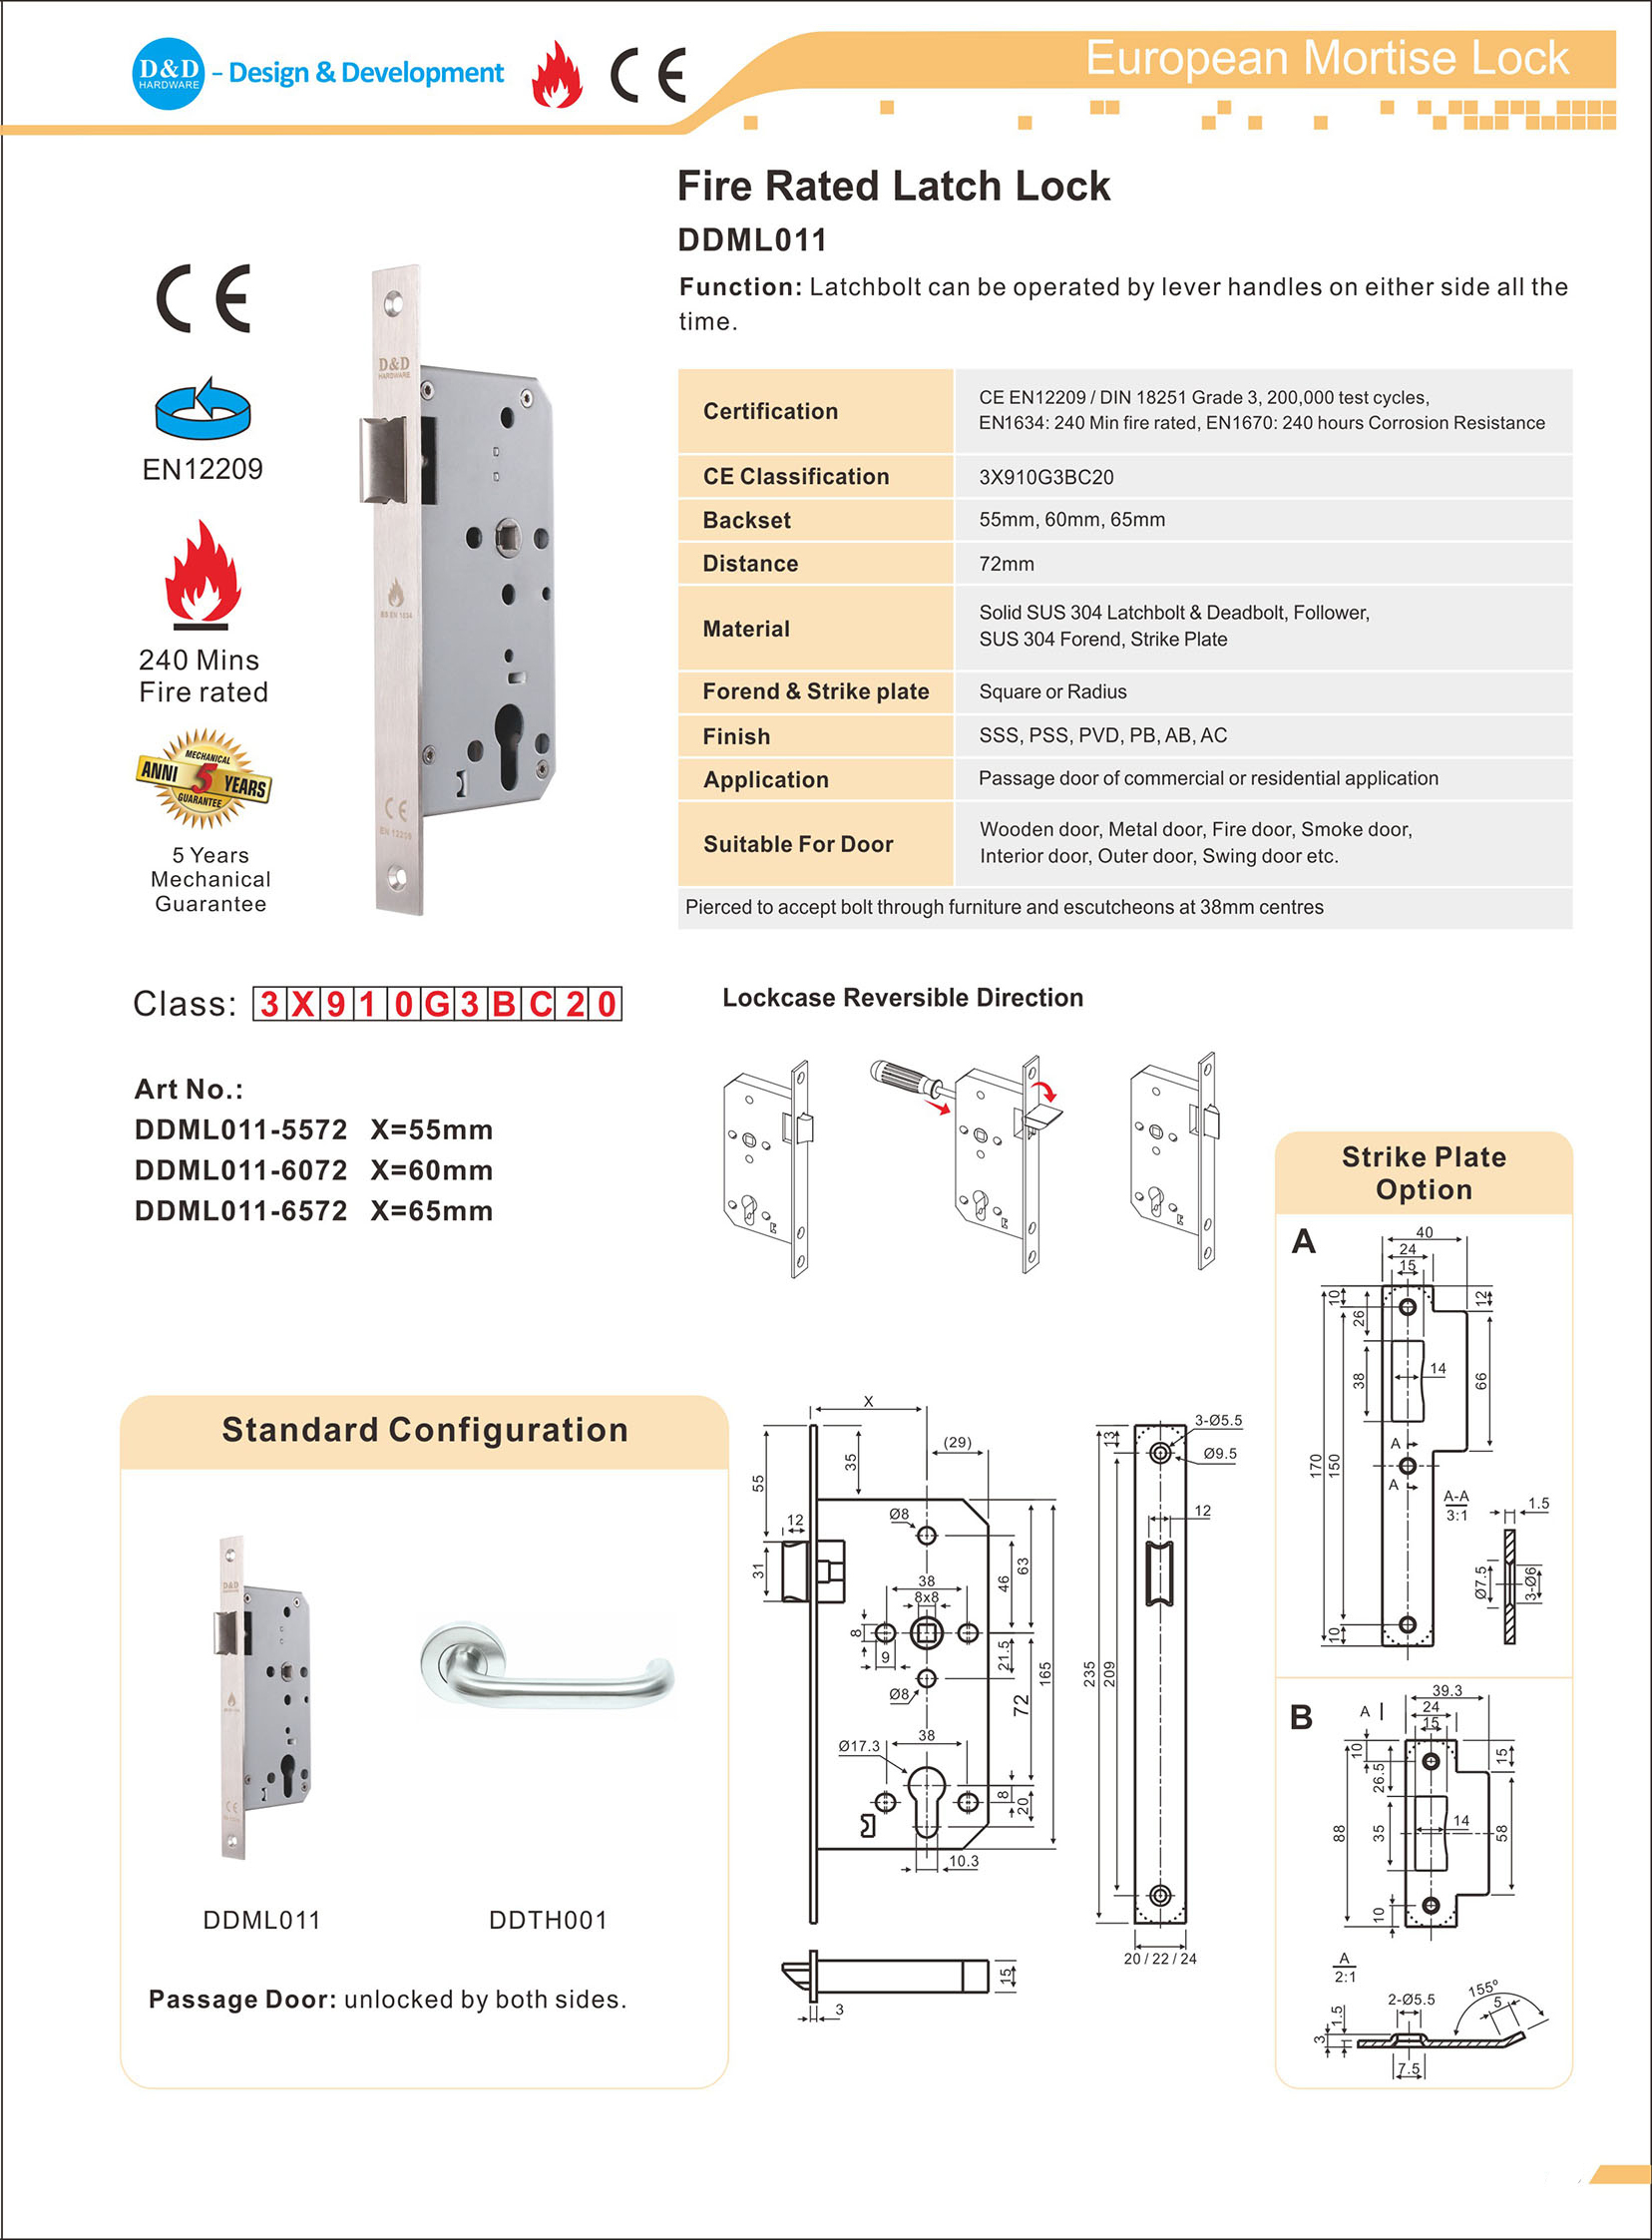 CE Fire Rate Latch Lock-DDML011